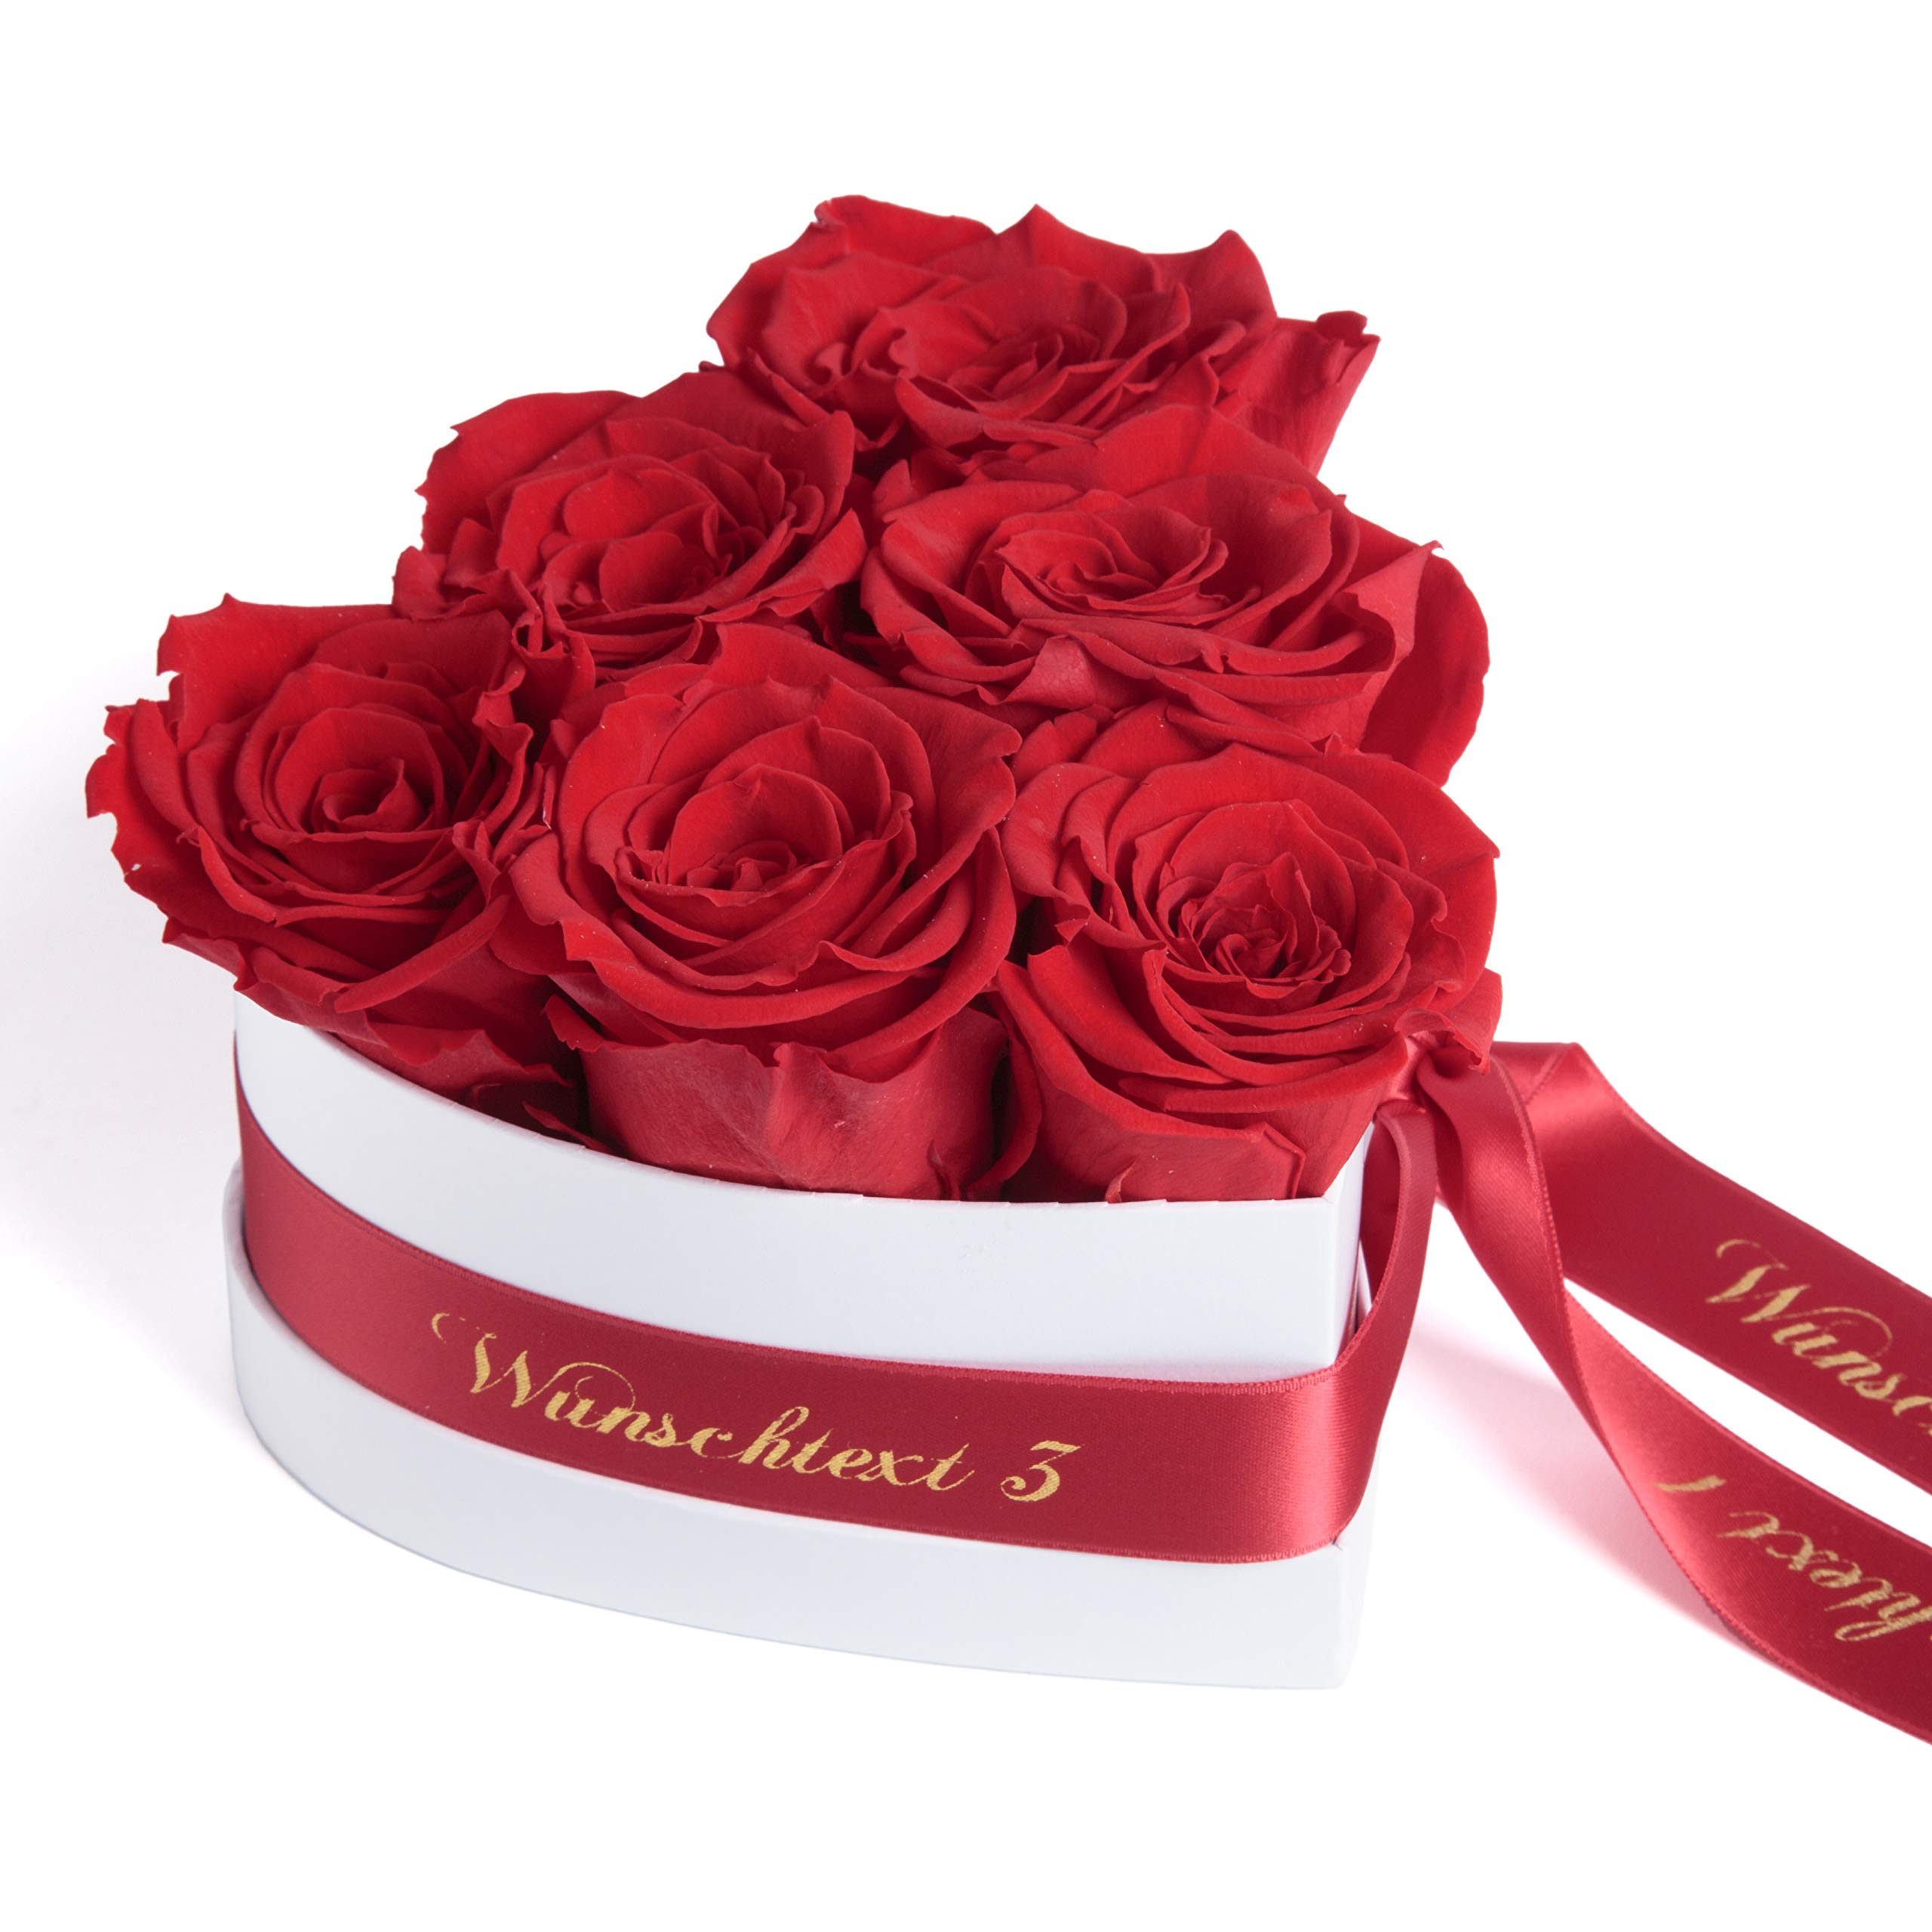 ROSEMARIE SCHULZ Heidelberg Blumenherz Infinity Rosenbox Herz mit WUNSCHTEXT personalisiert und konservierte Rosen Liebeserklärung Geschenk für Frauen (Wunschtext, Rot)